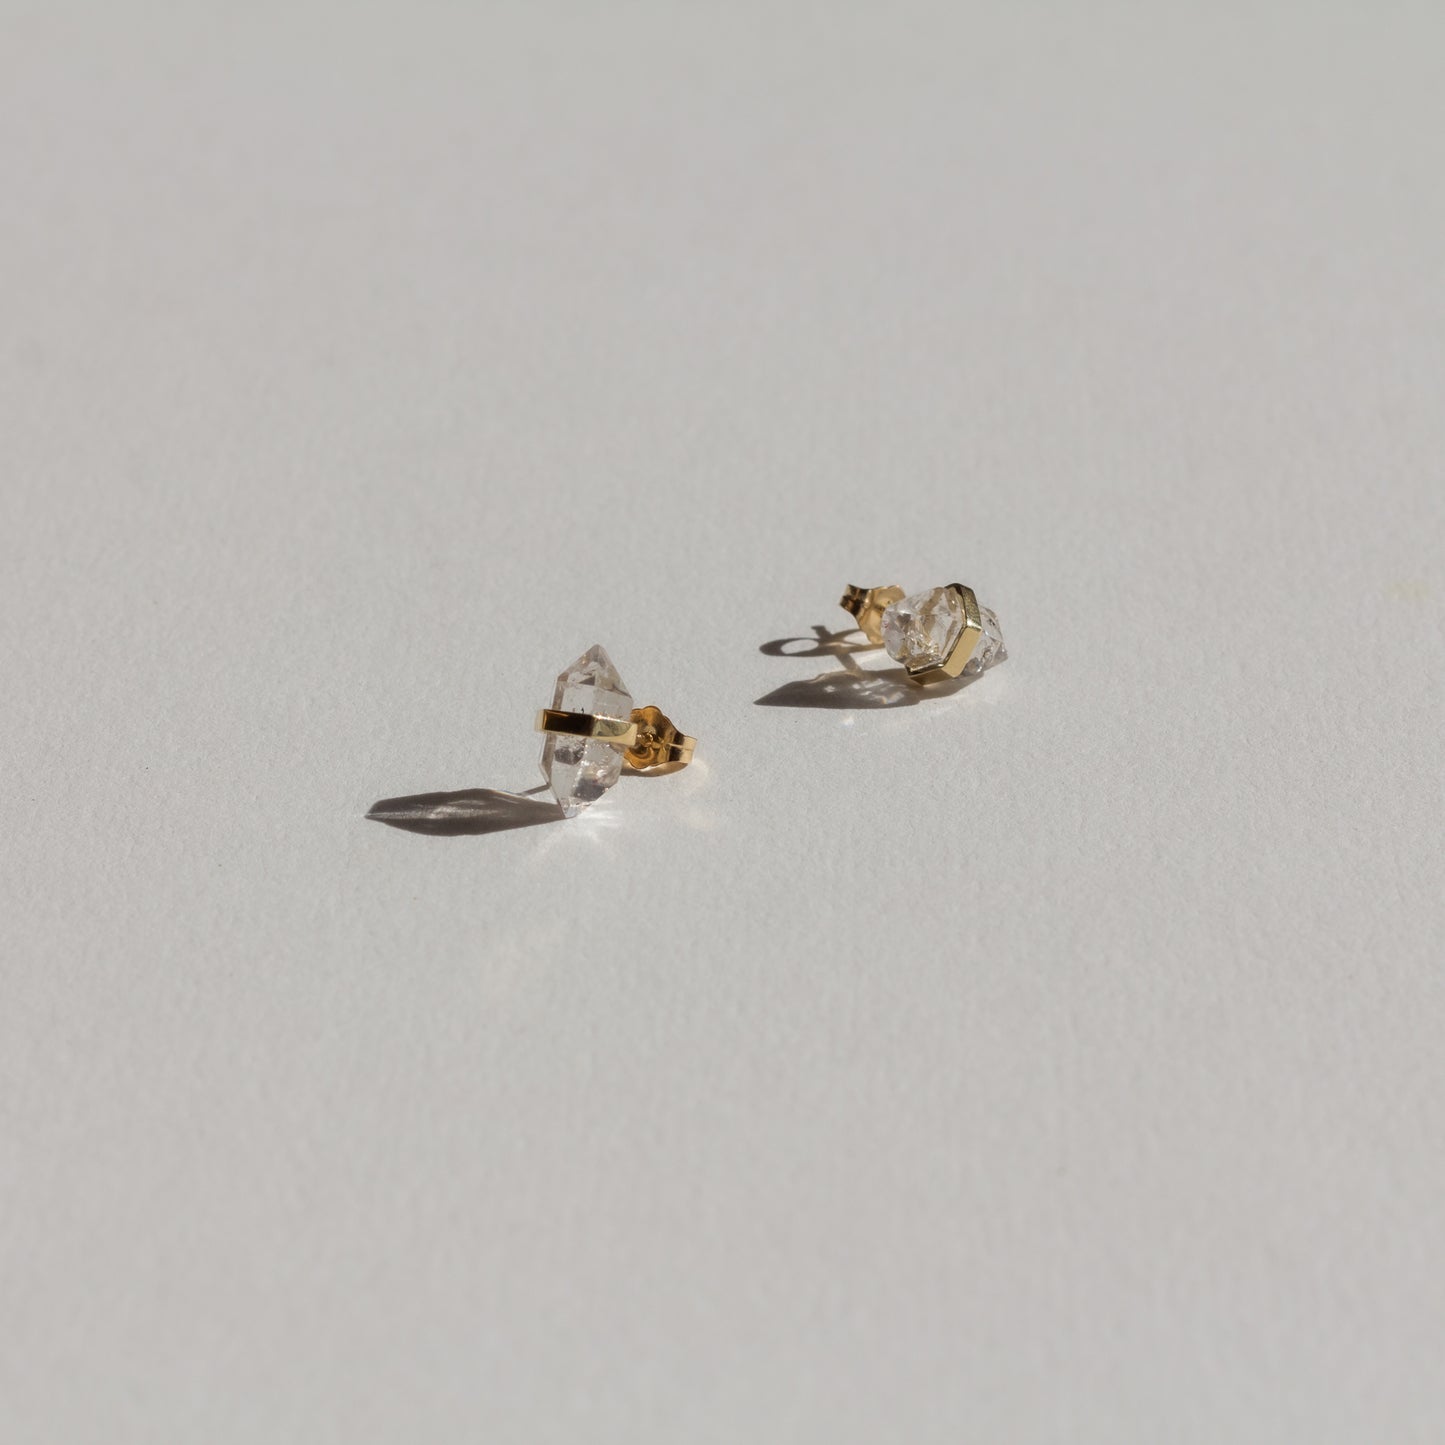 Nestled Gemstone Earring